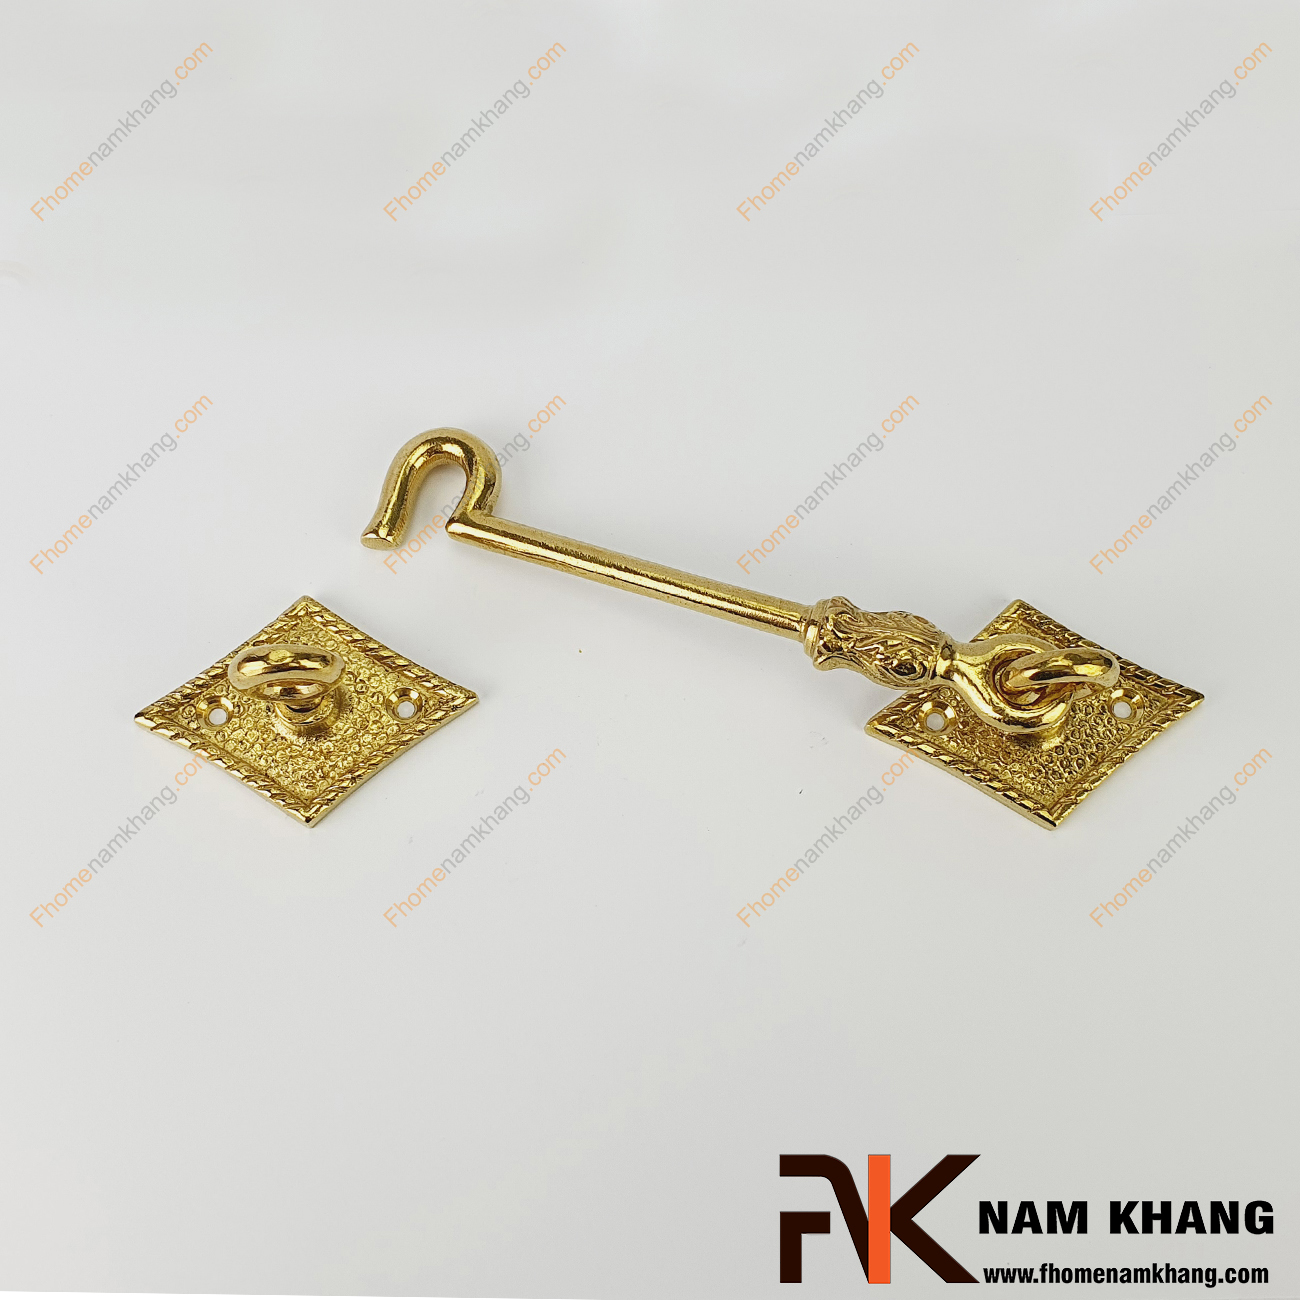 Móc cửa bằng đồng màu đồng vàng NKD017-190 là một dạng phụ kiện thường dùng trên các dạng cánh cửa tủ và cánh cửa sổ với mục đích khóa giữ cách cửa tạm thời. 